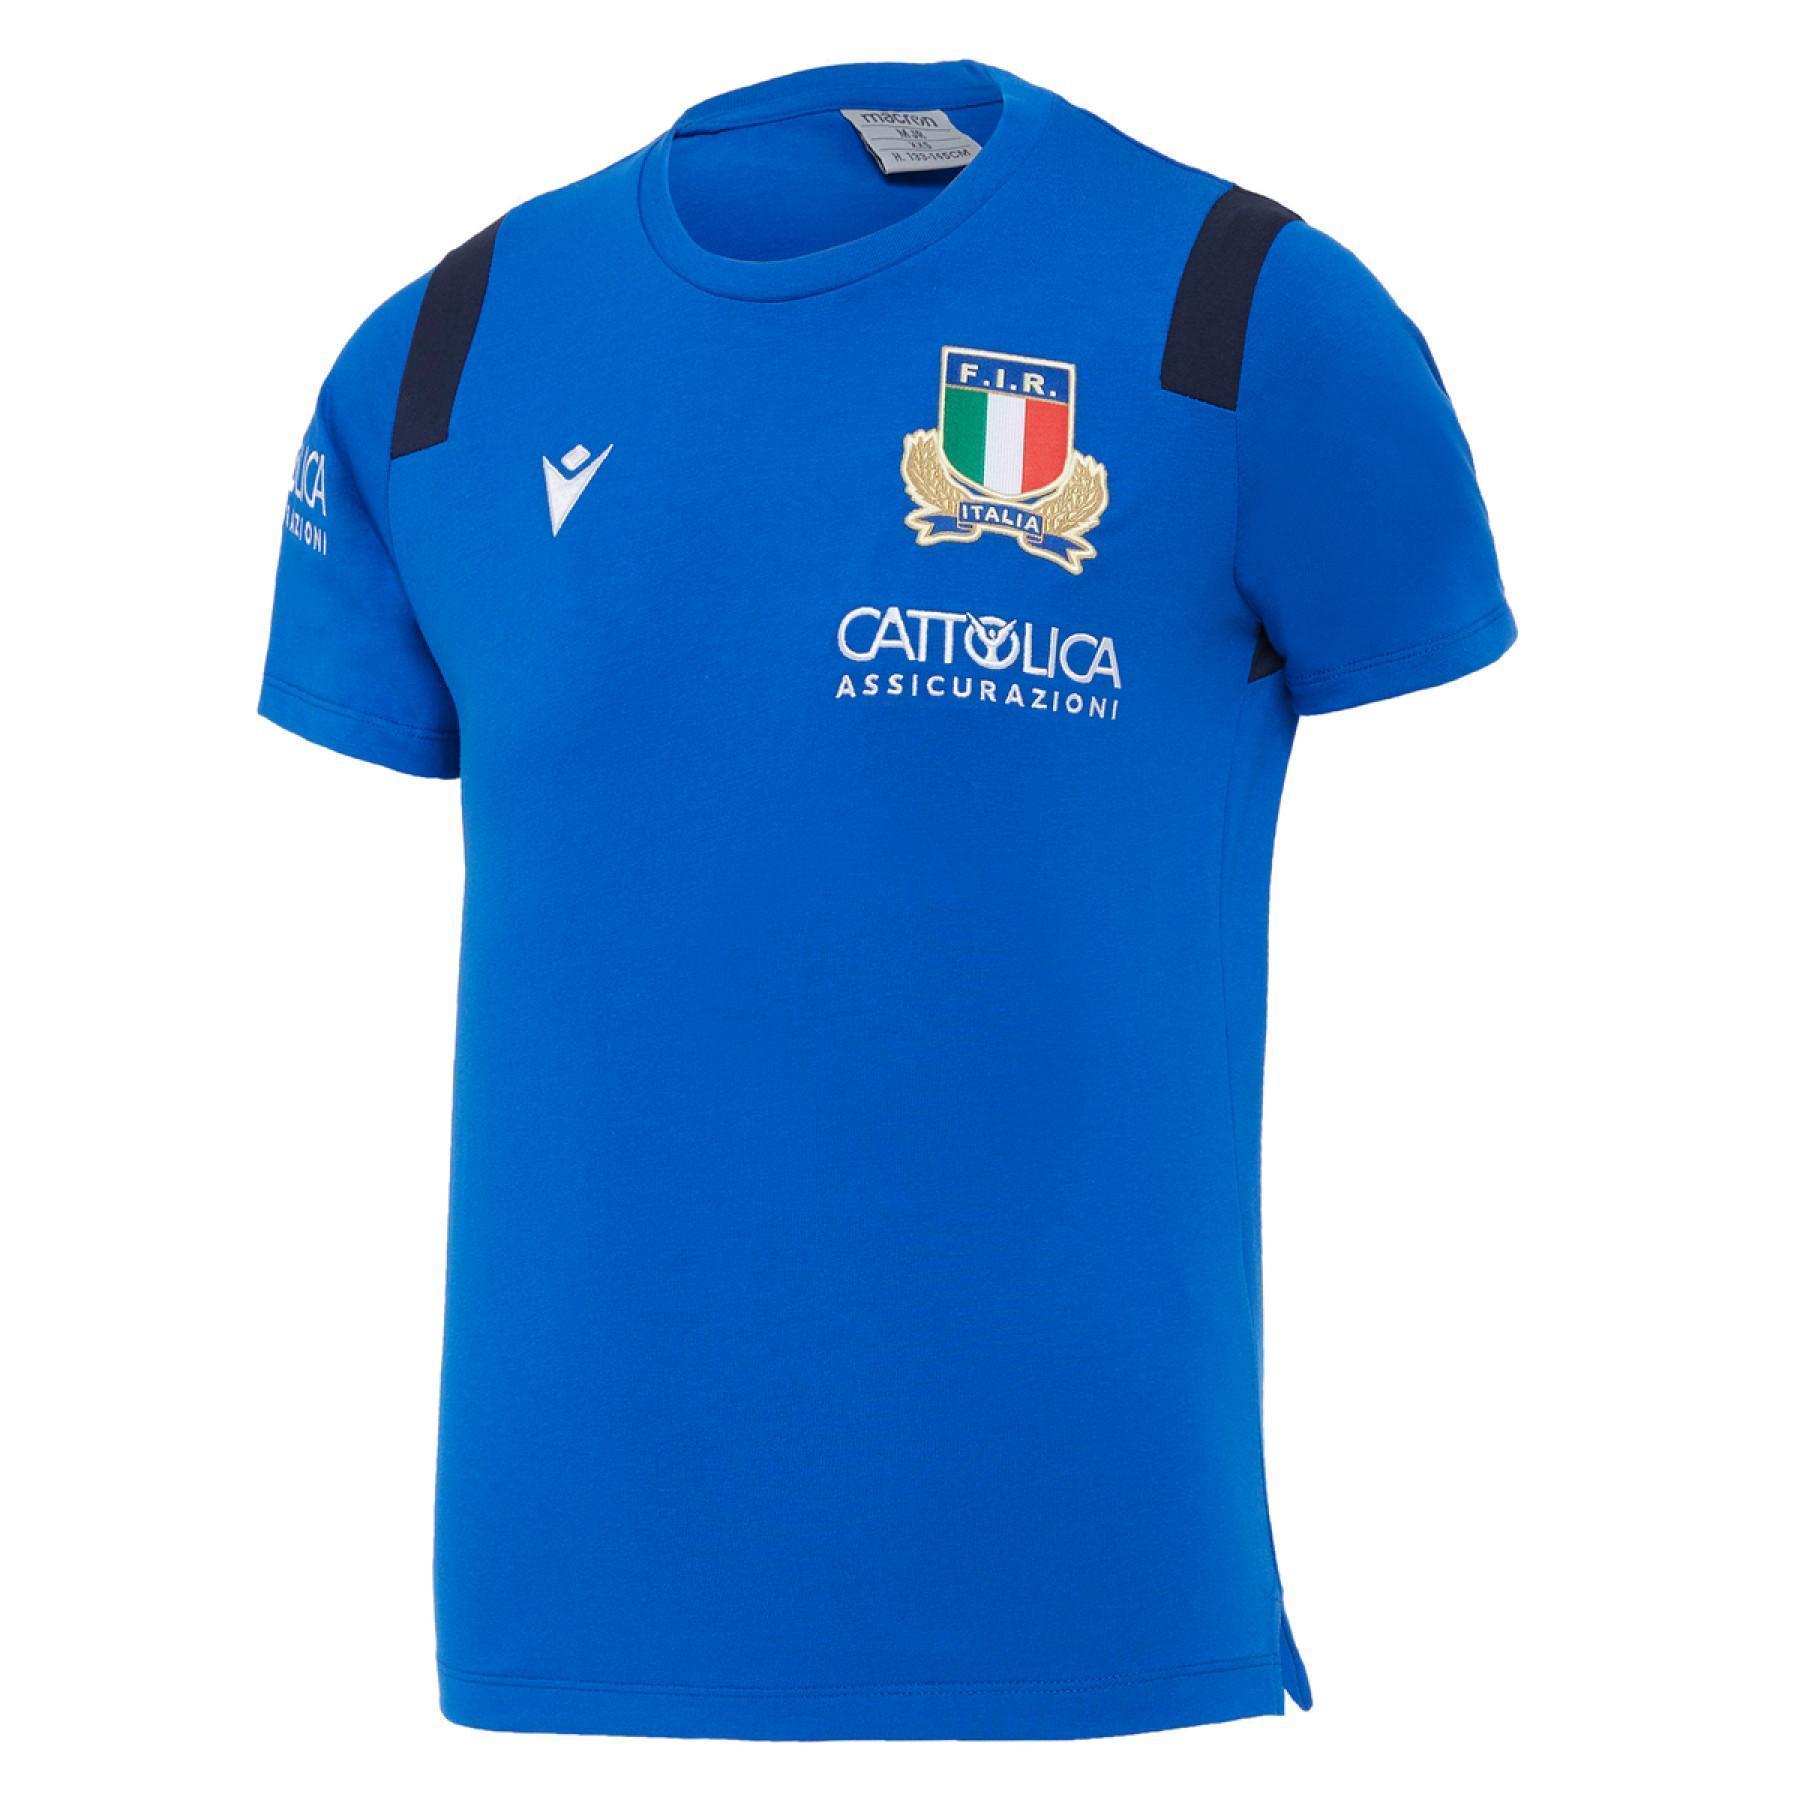 Maglia per bambini cotone Italie rugby 2020/21